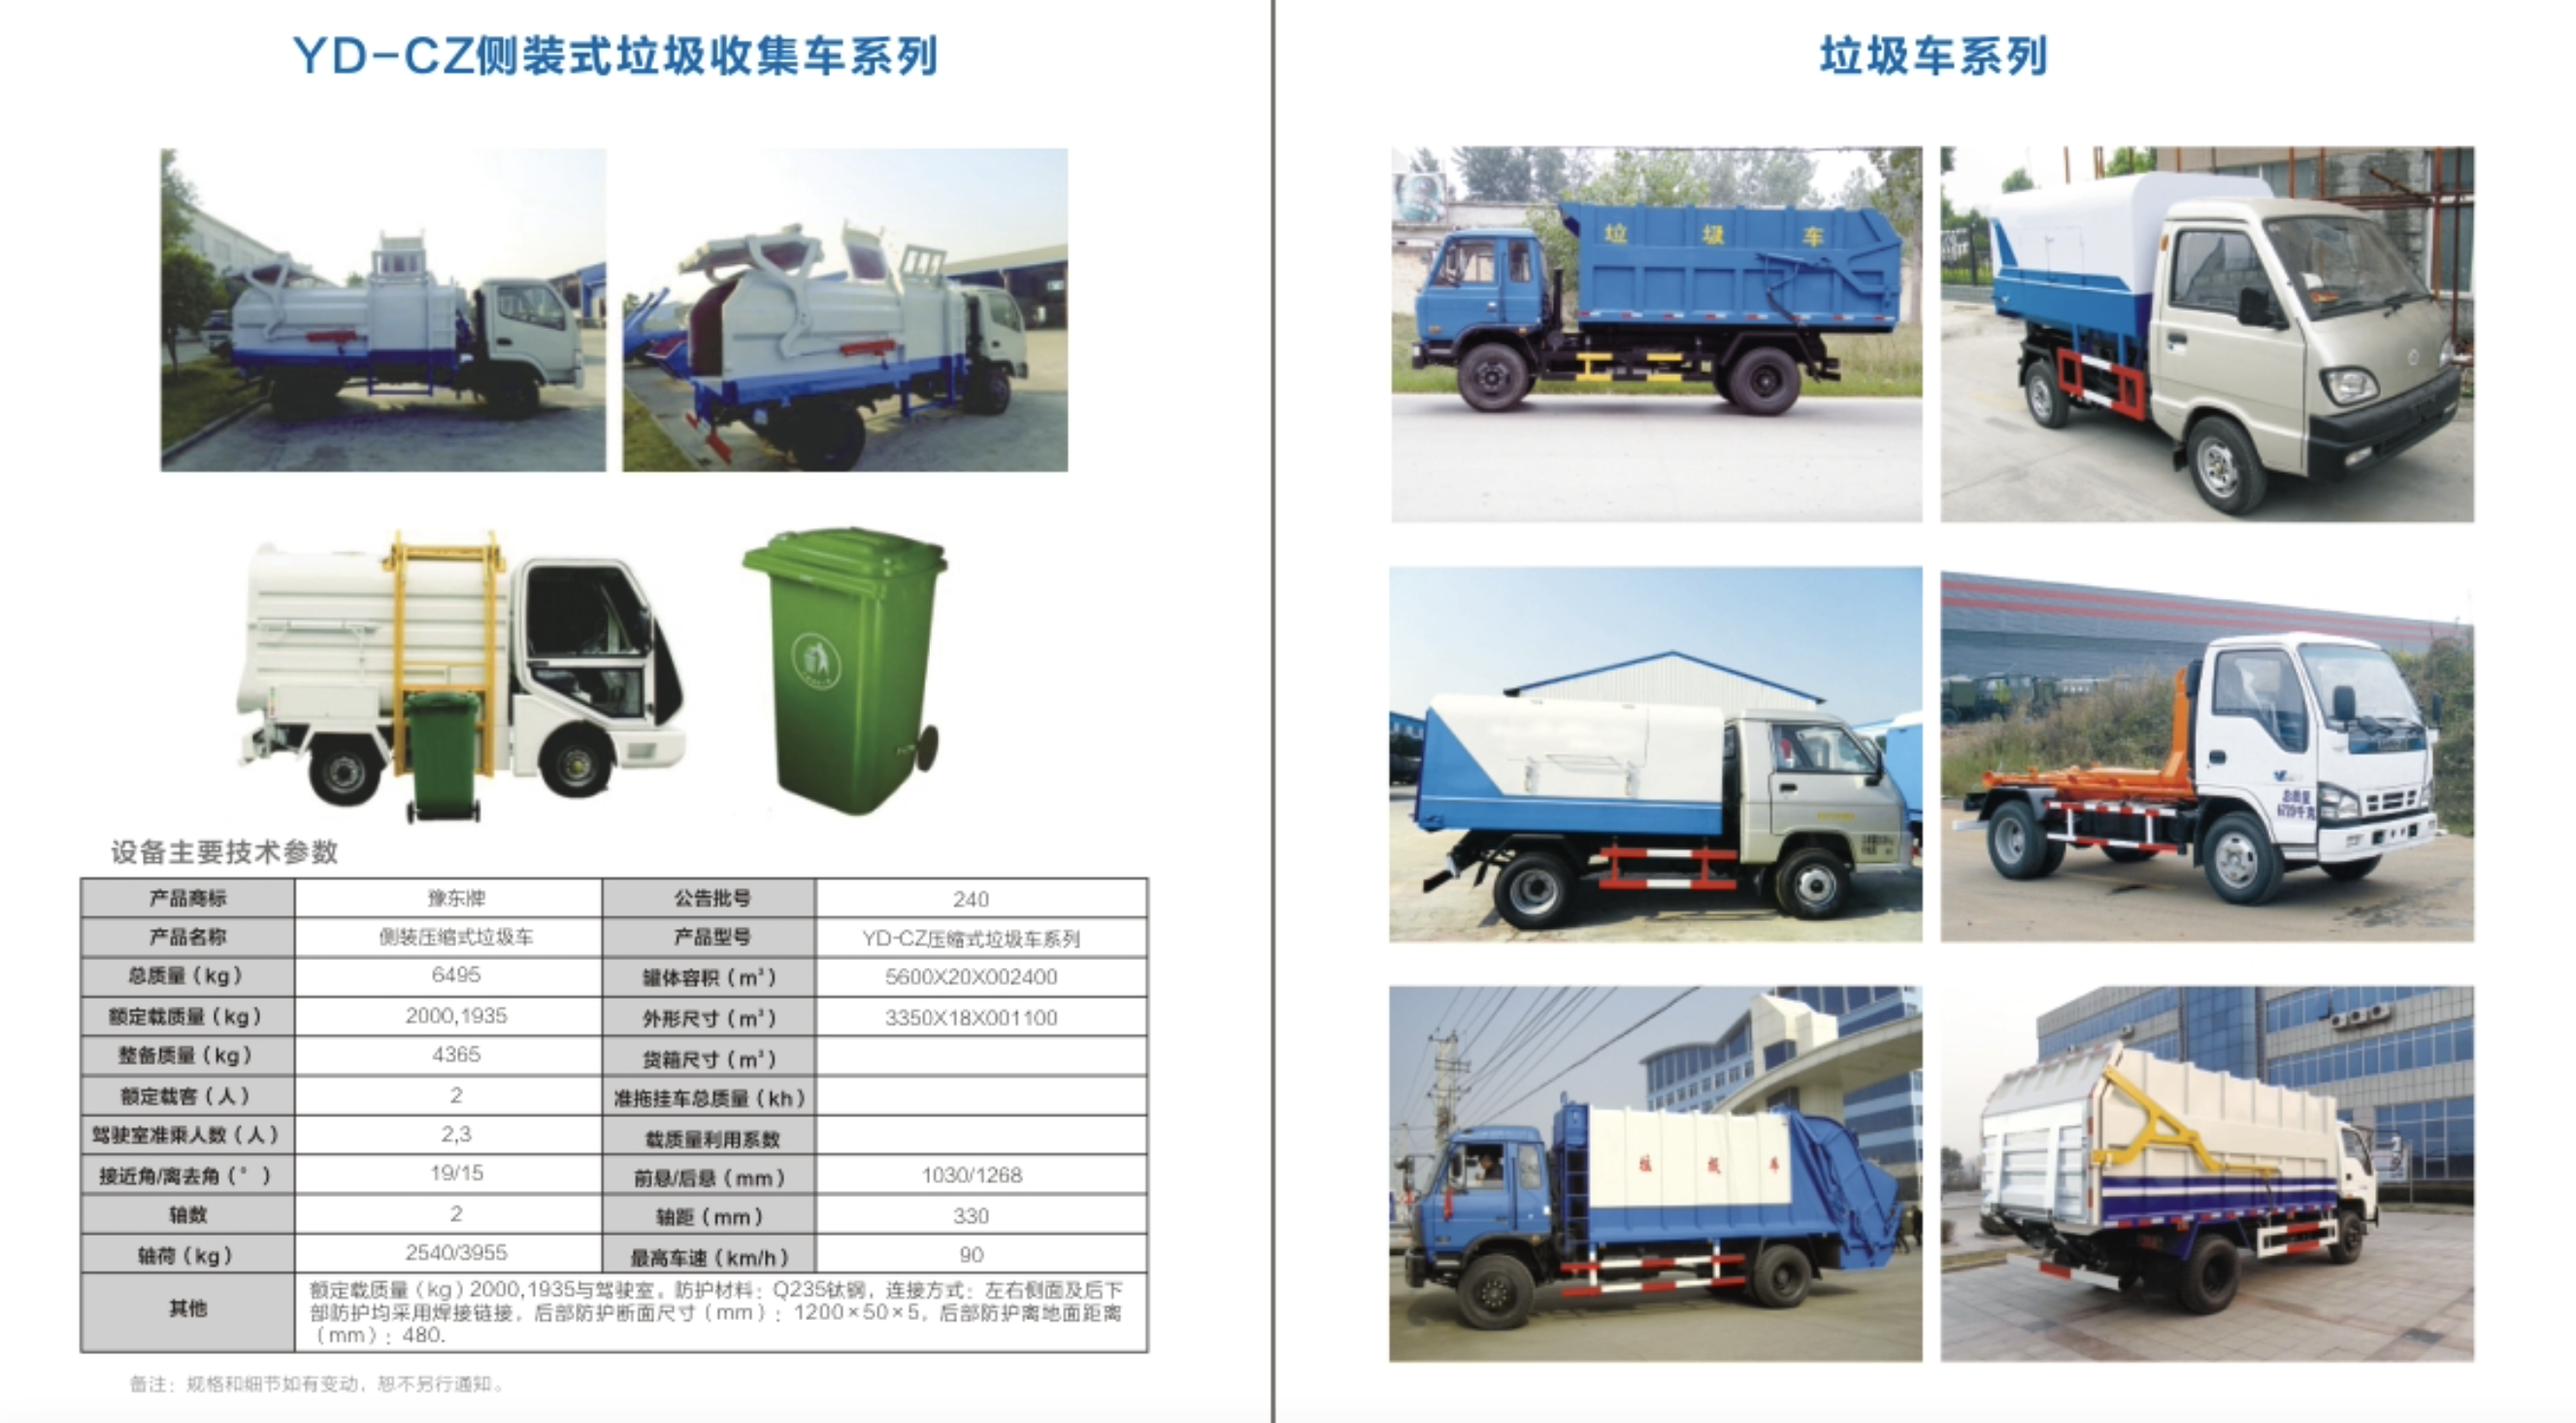 侧装式垃圾收集车系列(图1)